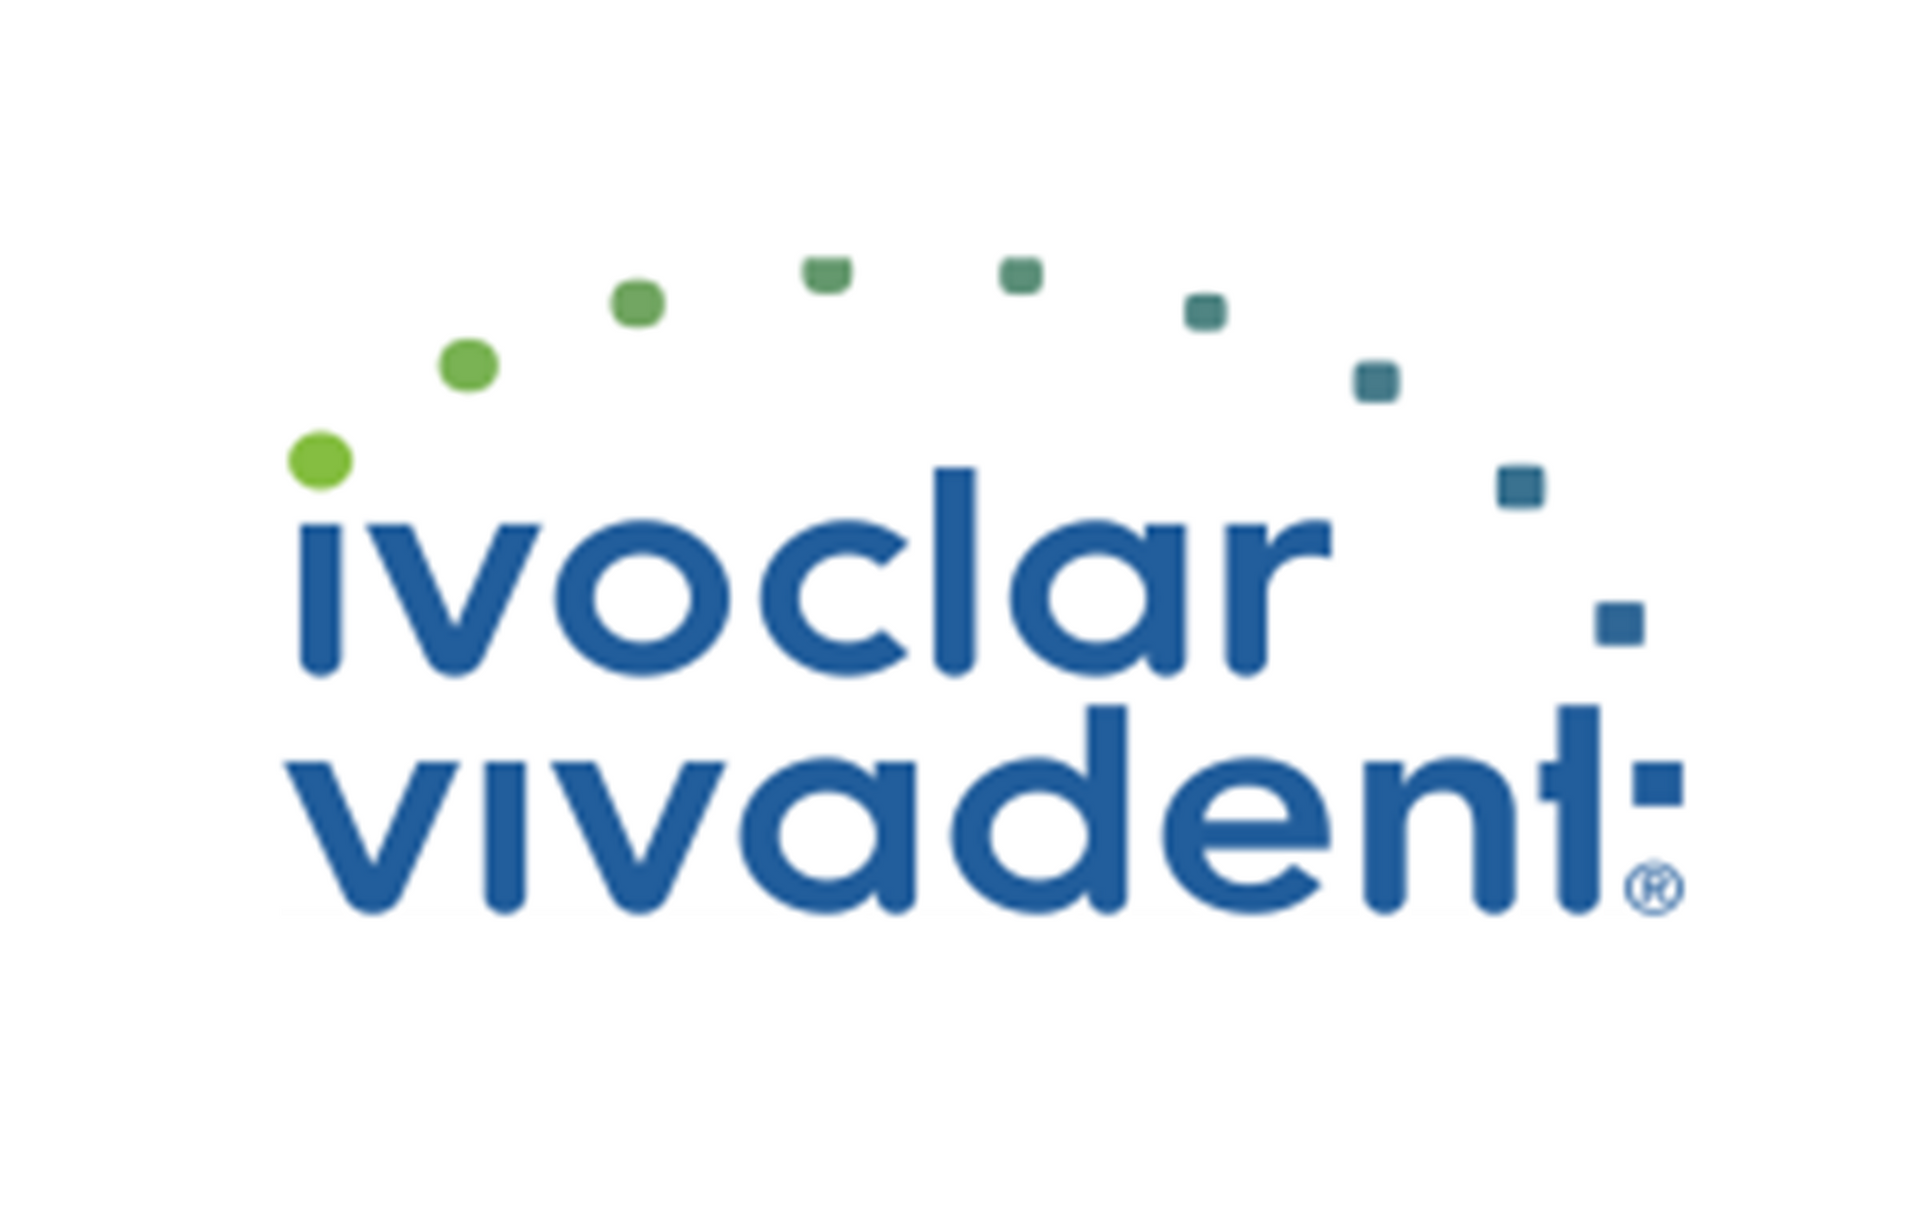 Ivoclar Vivadent Logo